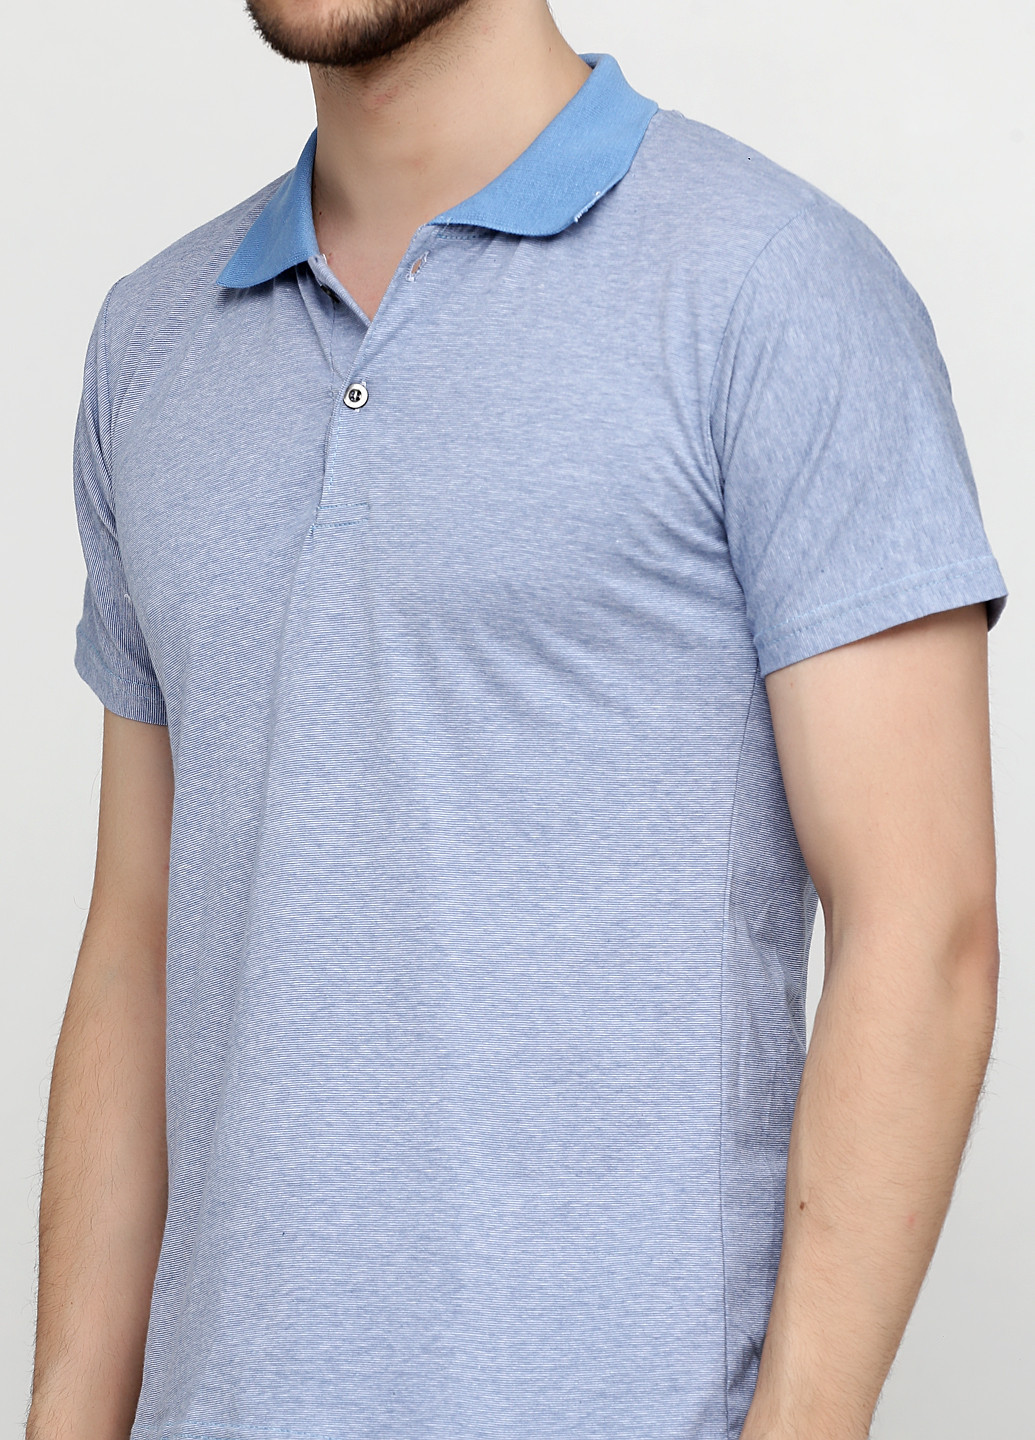 Светло-голубой футболка-поло для мужчин Chiarotex меланжевая